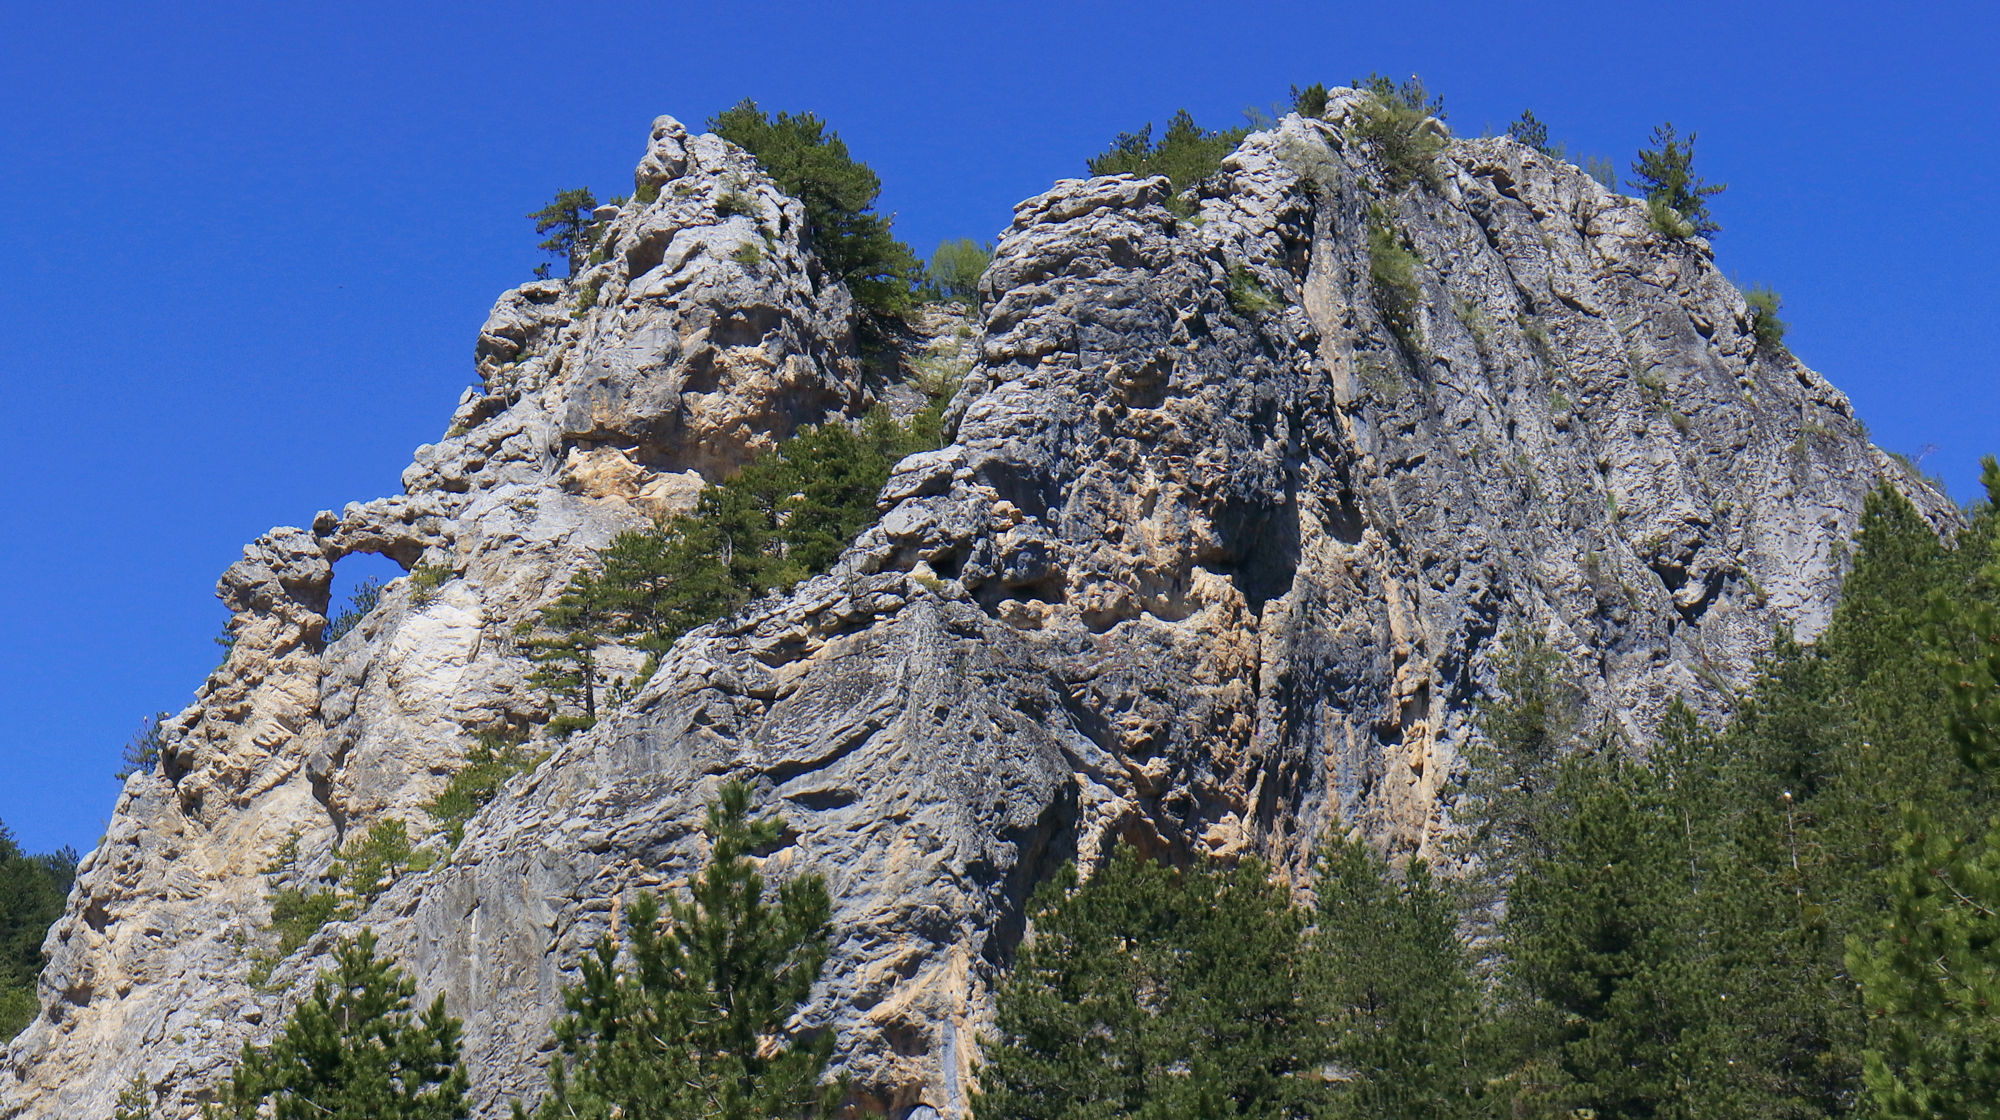 Ο βράχος στο Βέτερνικ, μια από τις χαρακτηριστικές ασβεστολιθικές εξάρσεις στην ορεινή ζώνη